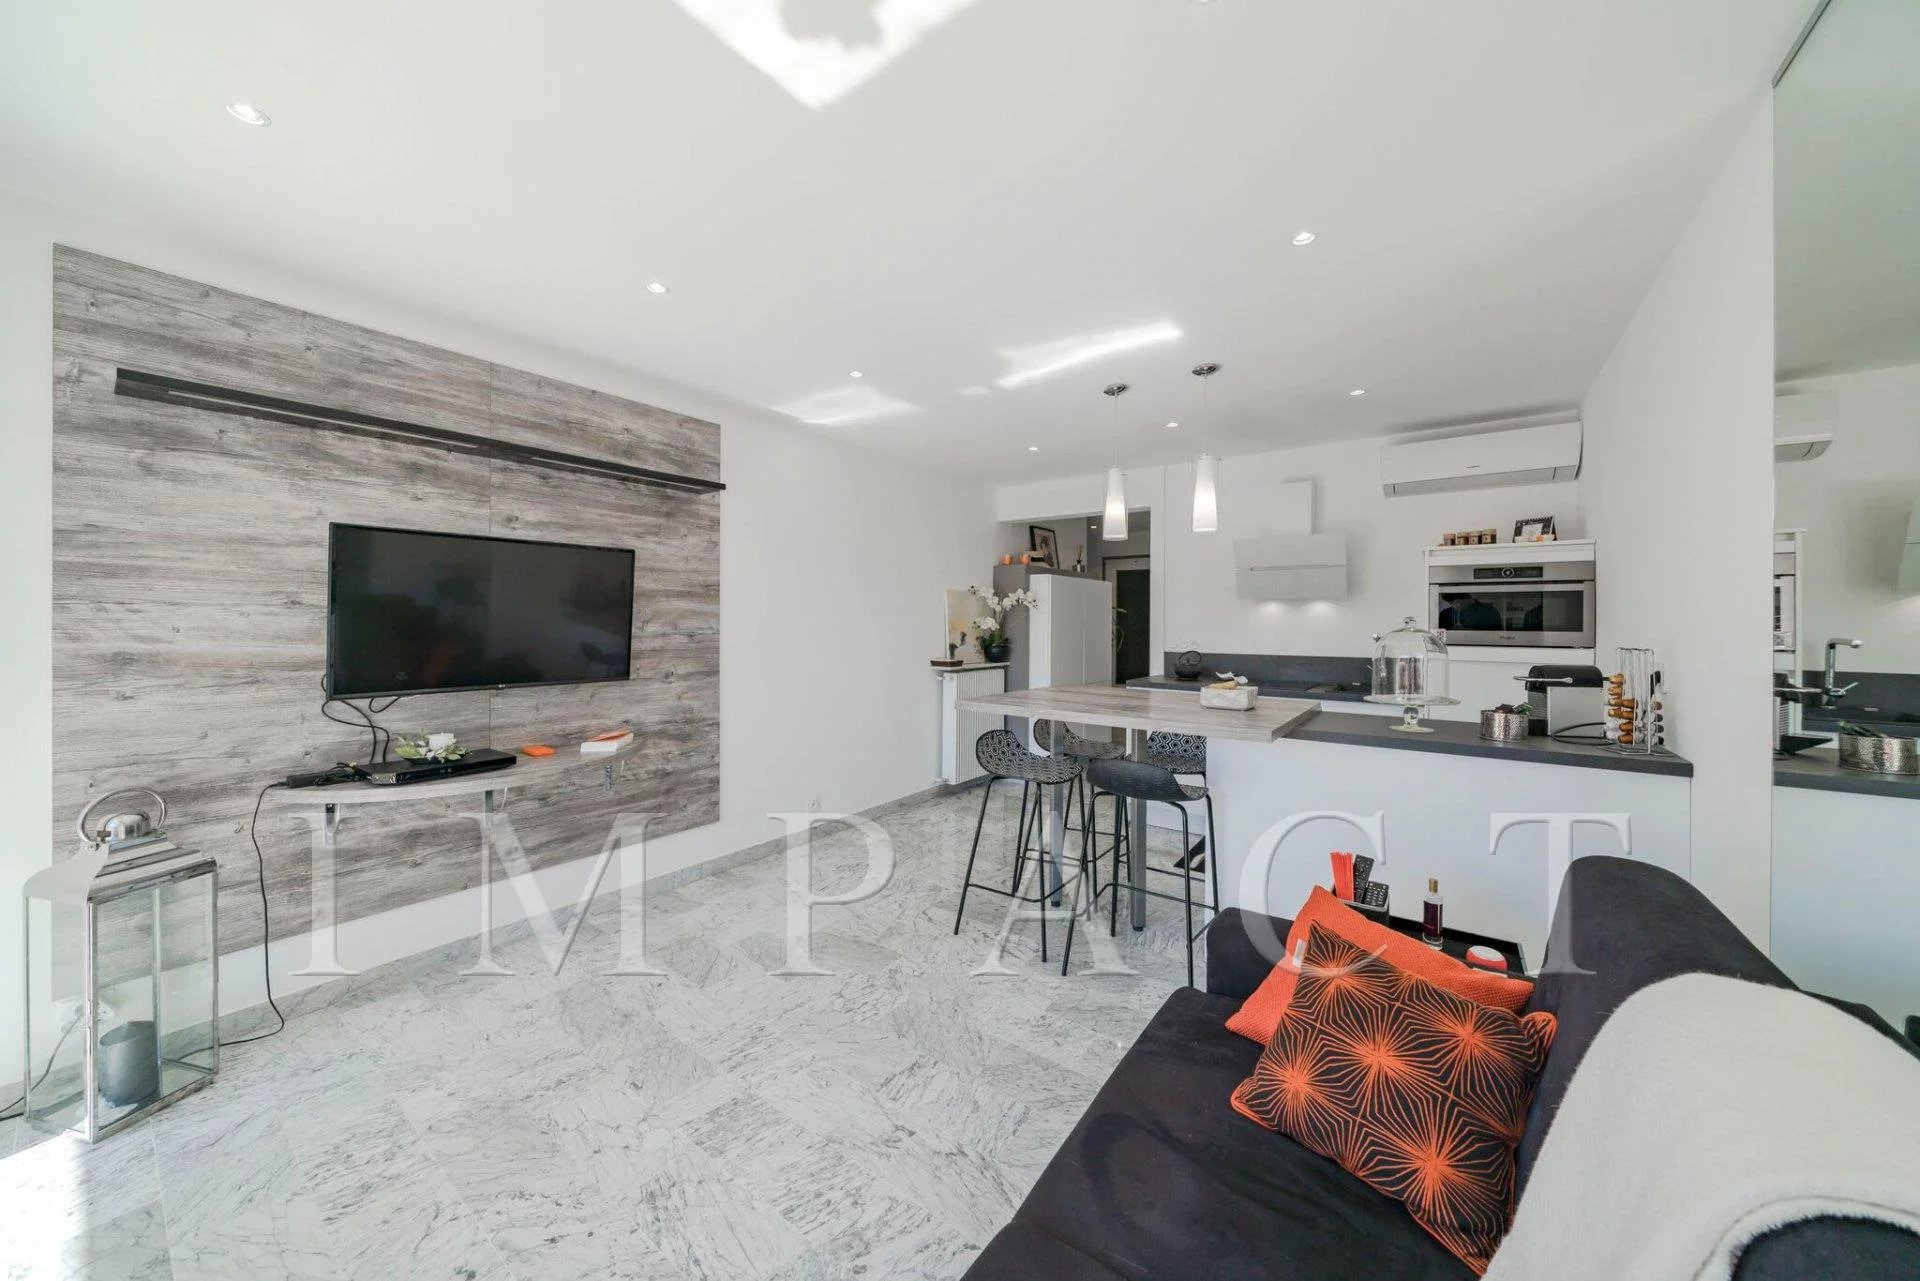 Living-room Kitchen bar Stainless steel Carpet Skylight Wooden floor